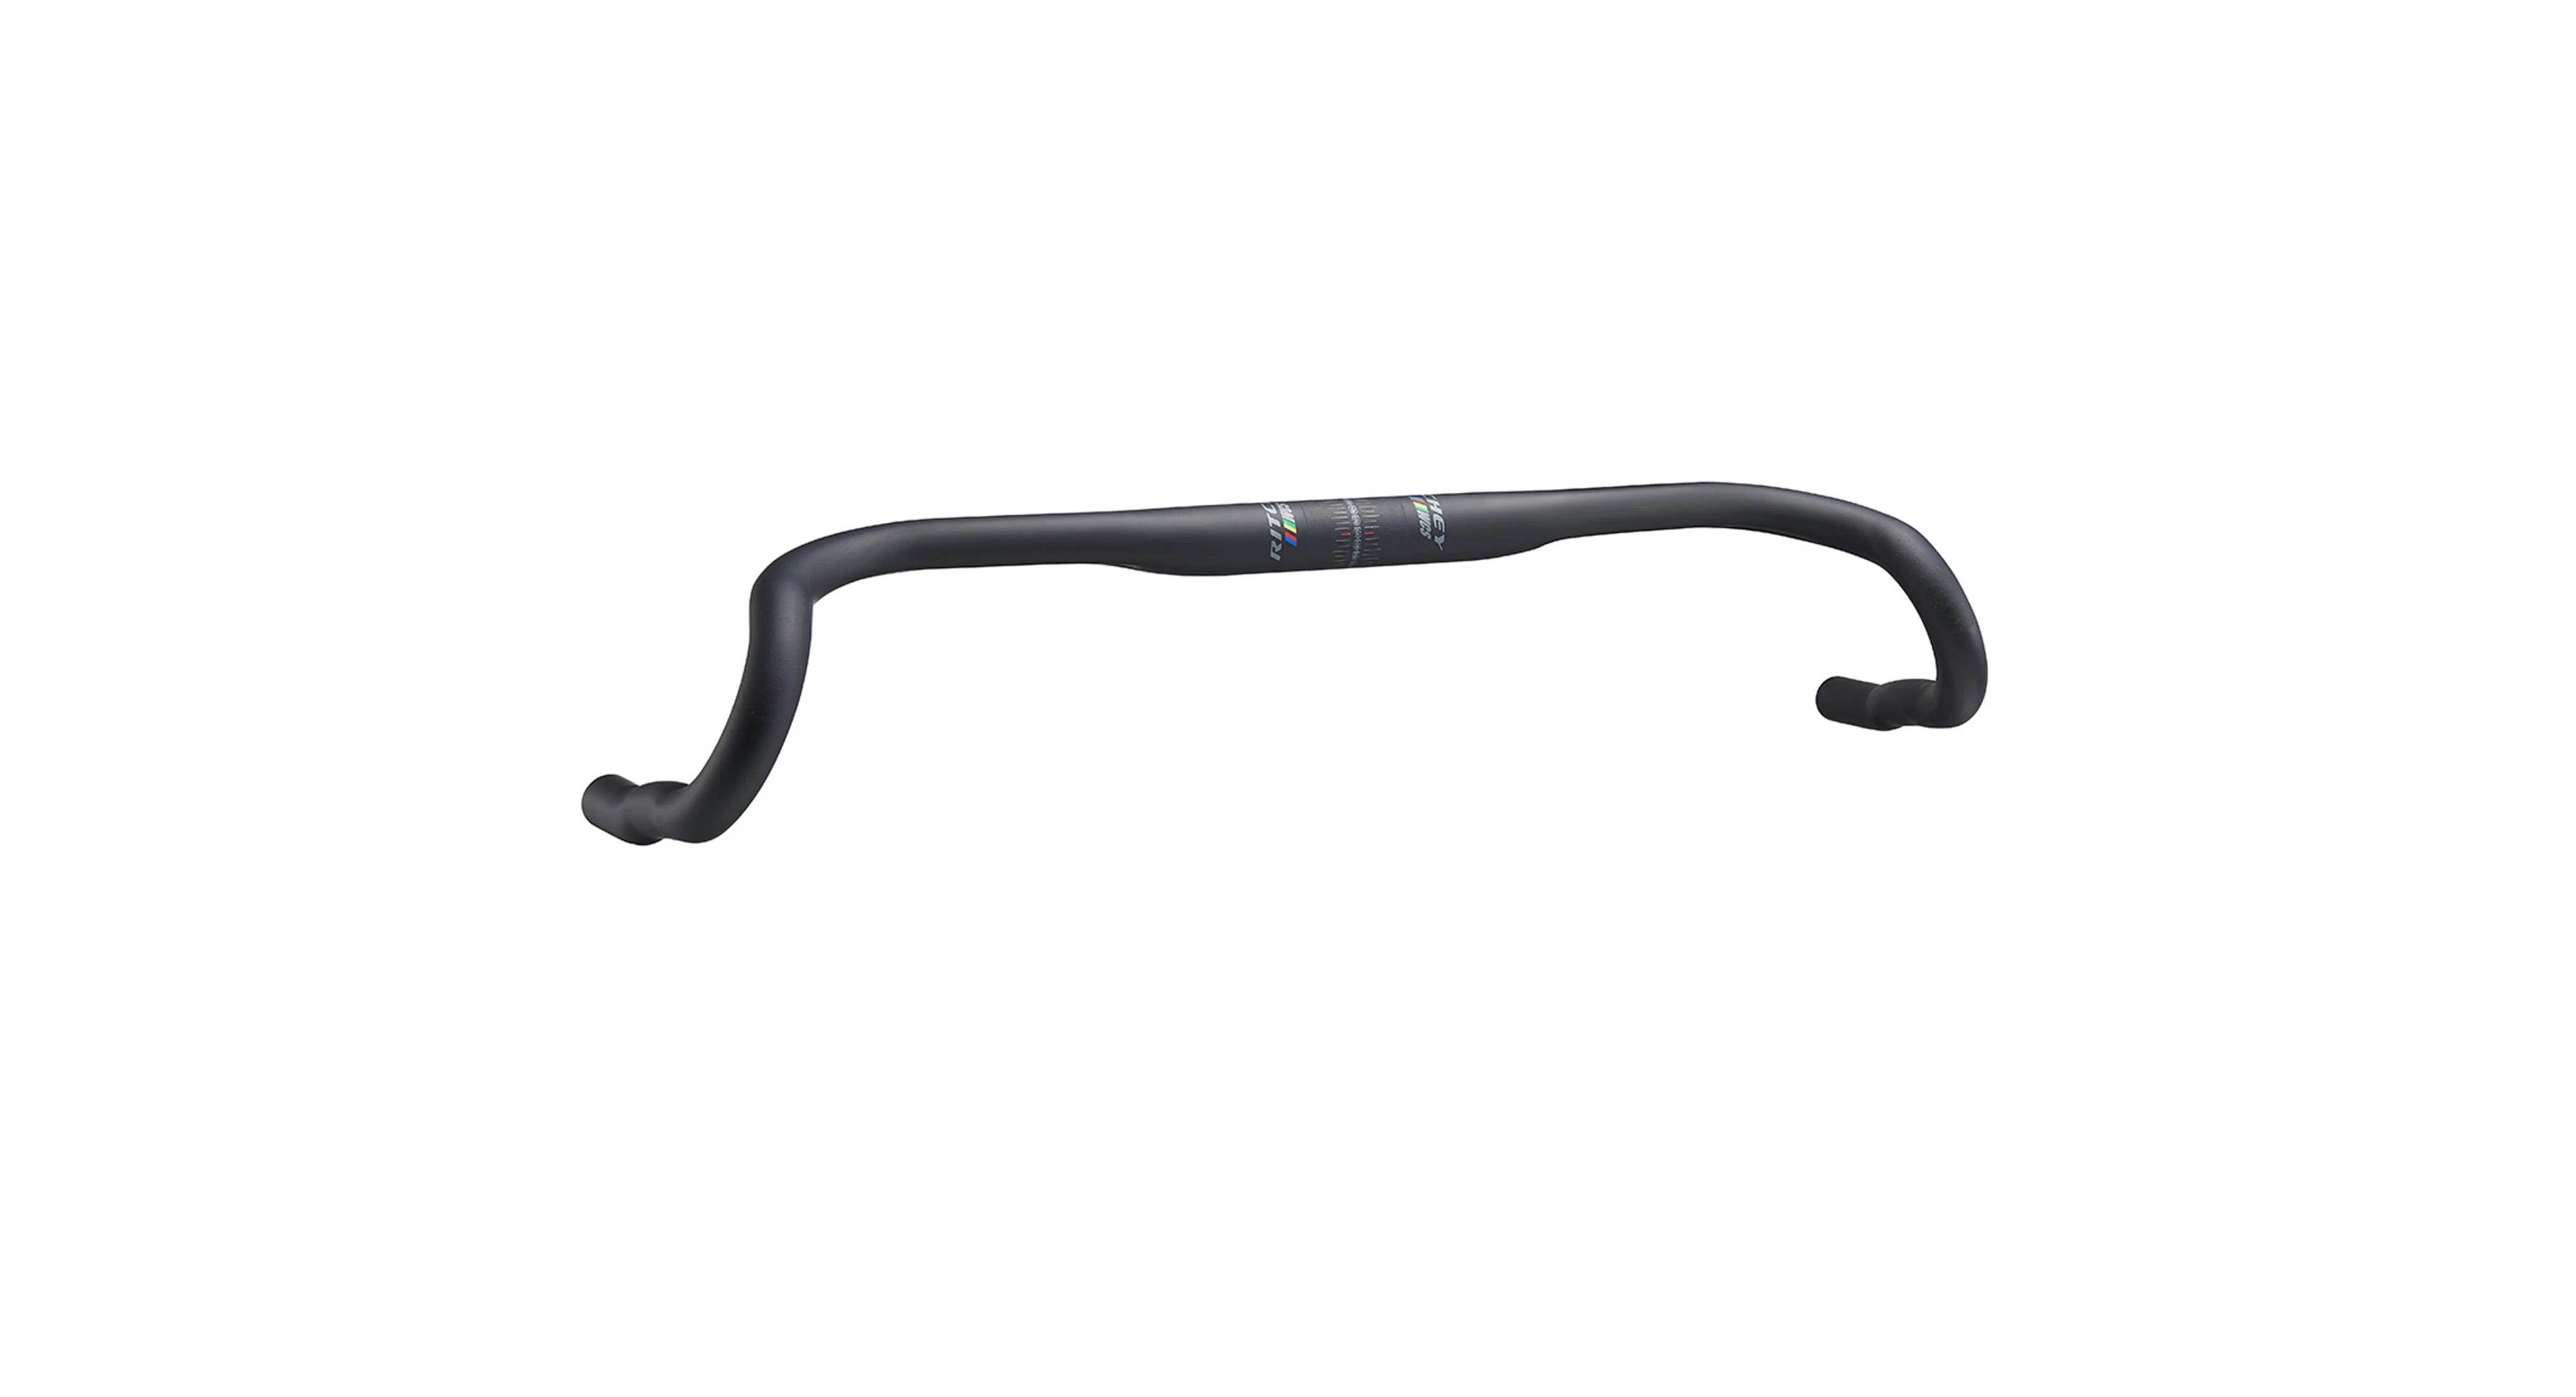 Xlc Cintre gravel hb-g01 460mm, 31,8mm, noir – 2020